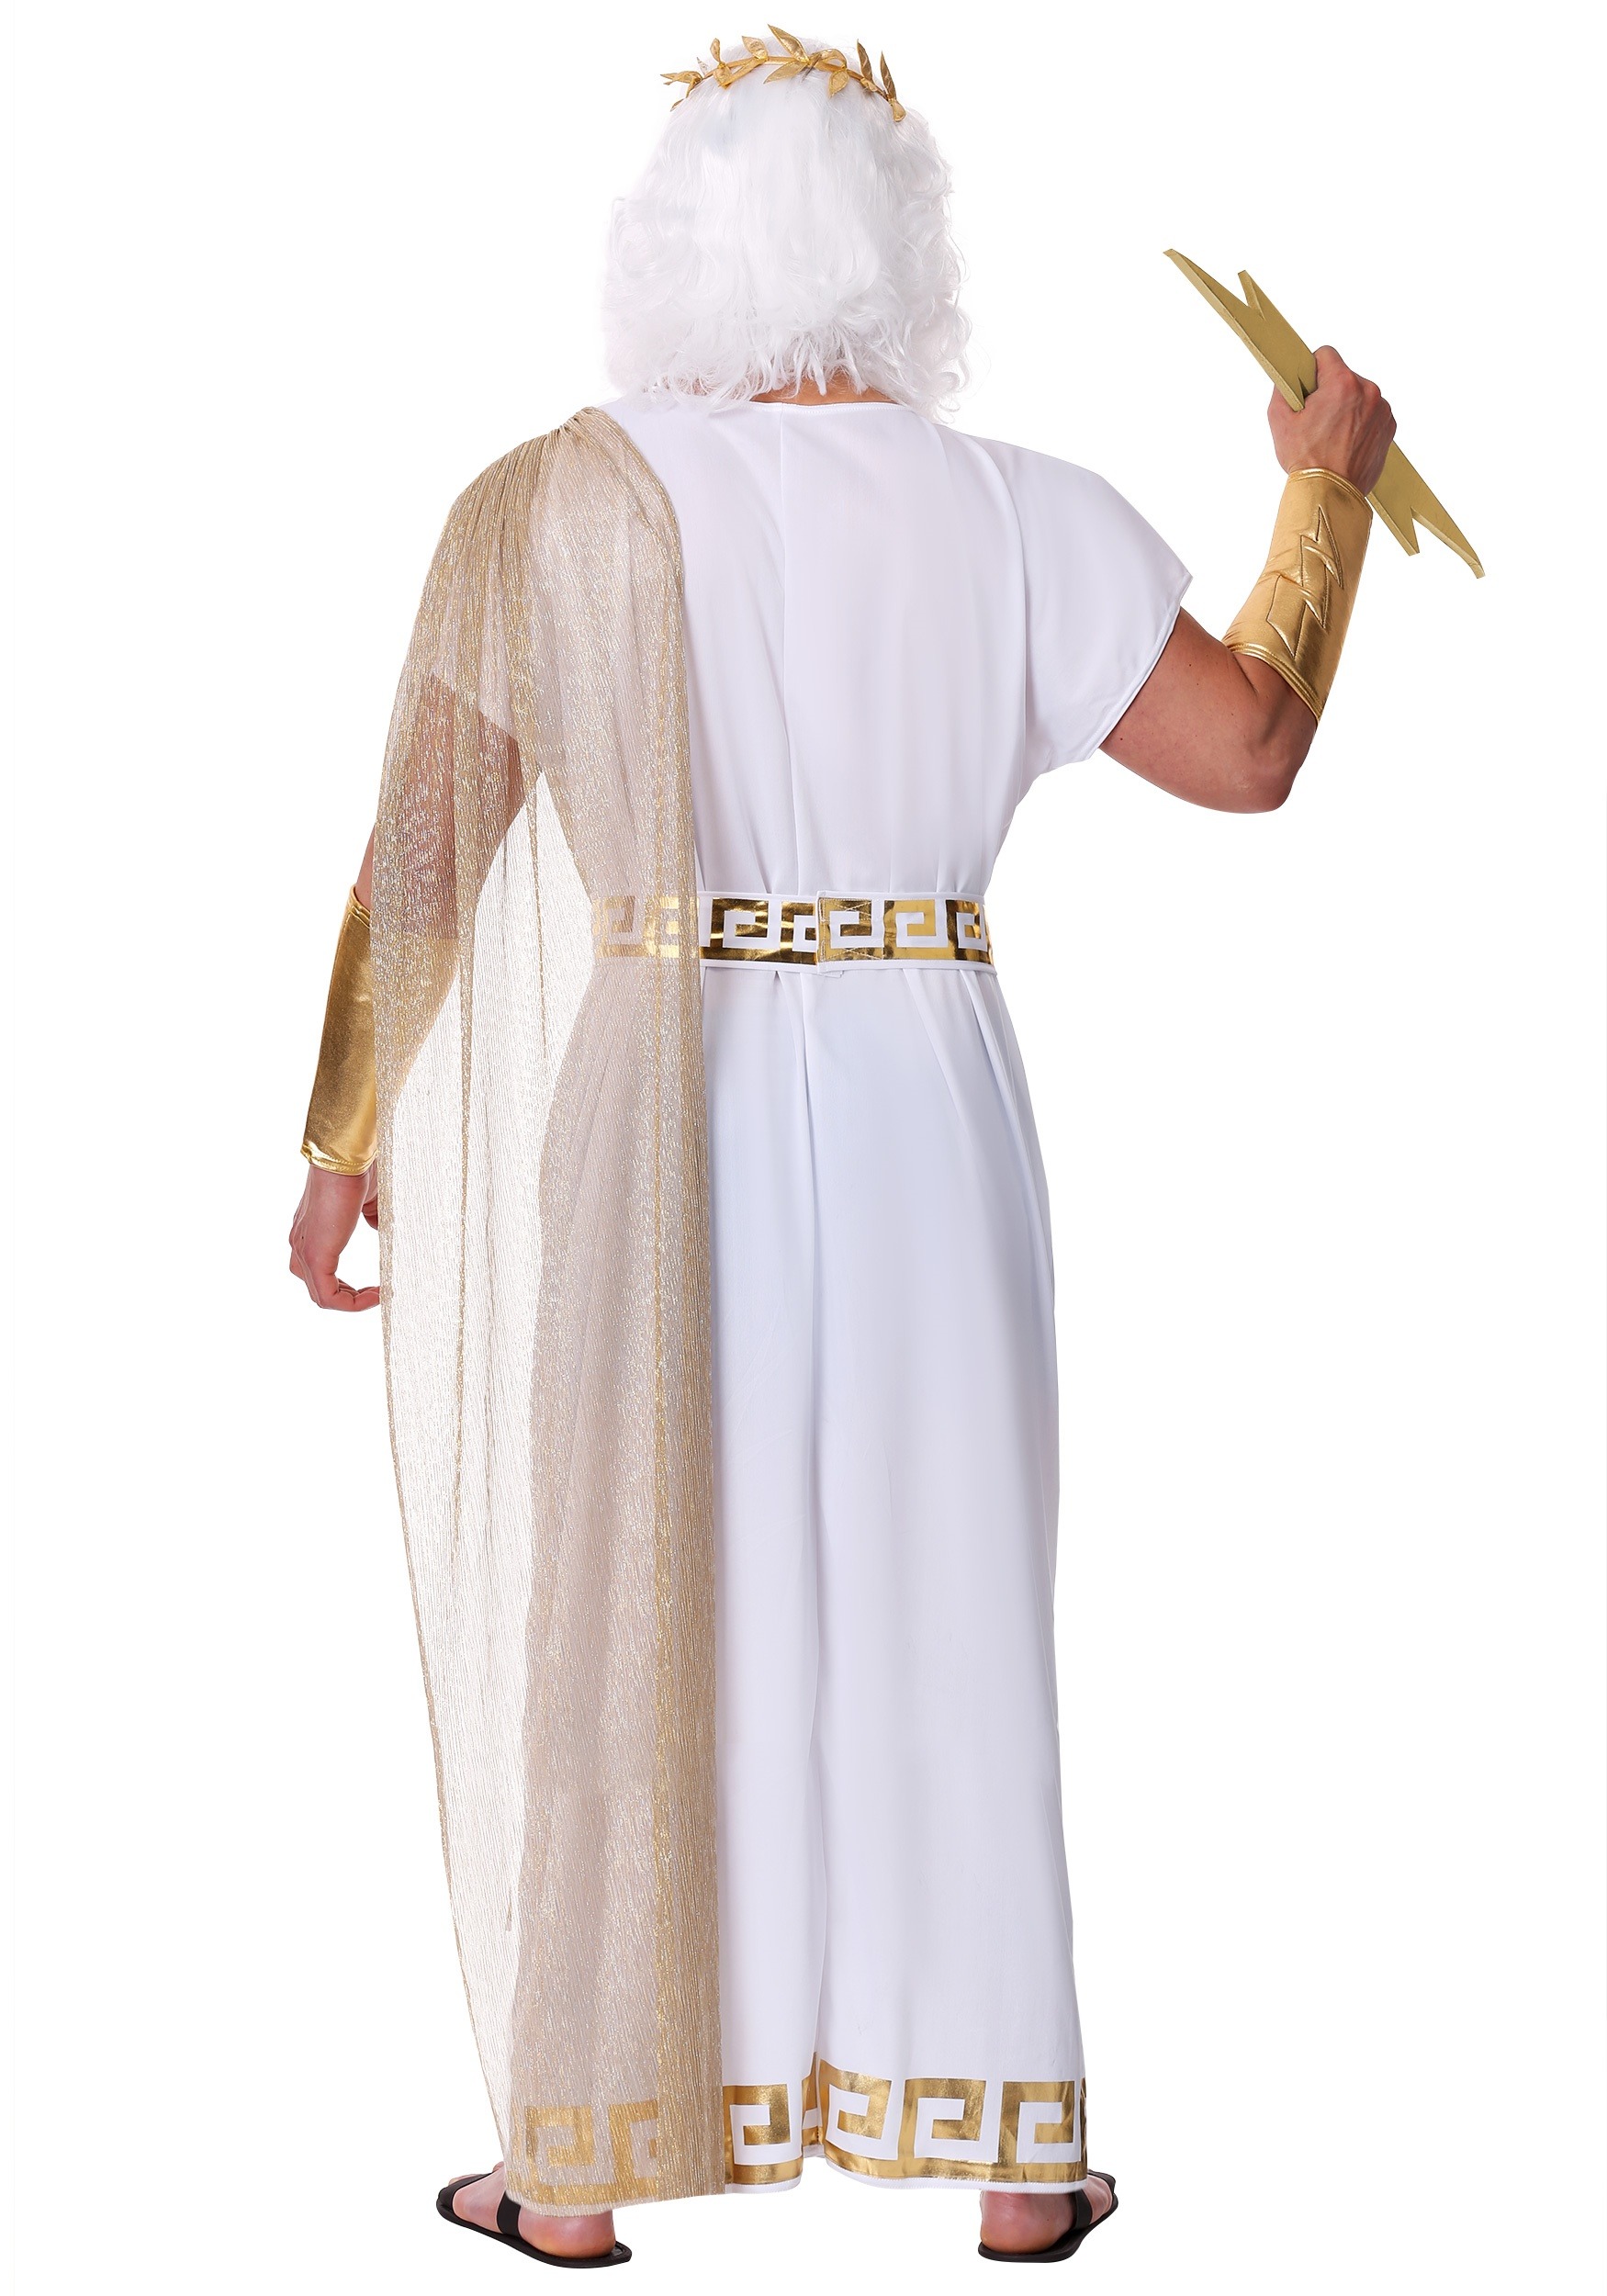 Plus Size Zeus Men's Fancy Dress Costume